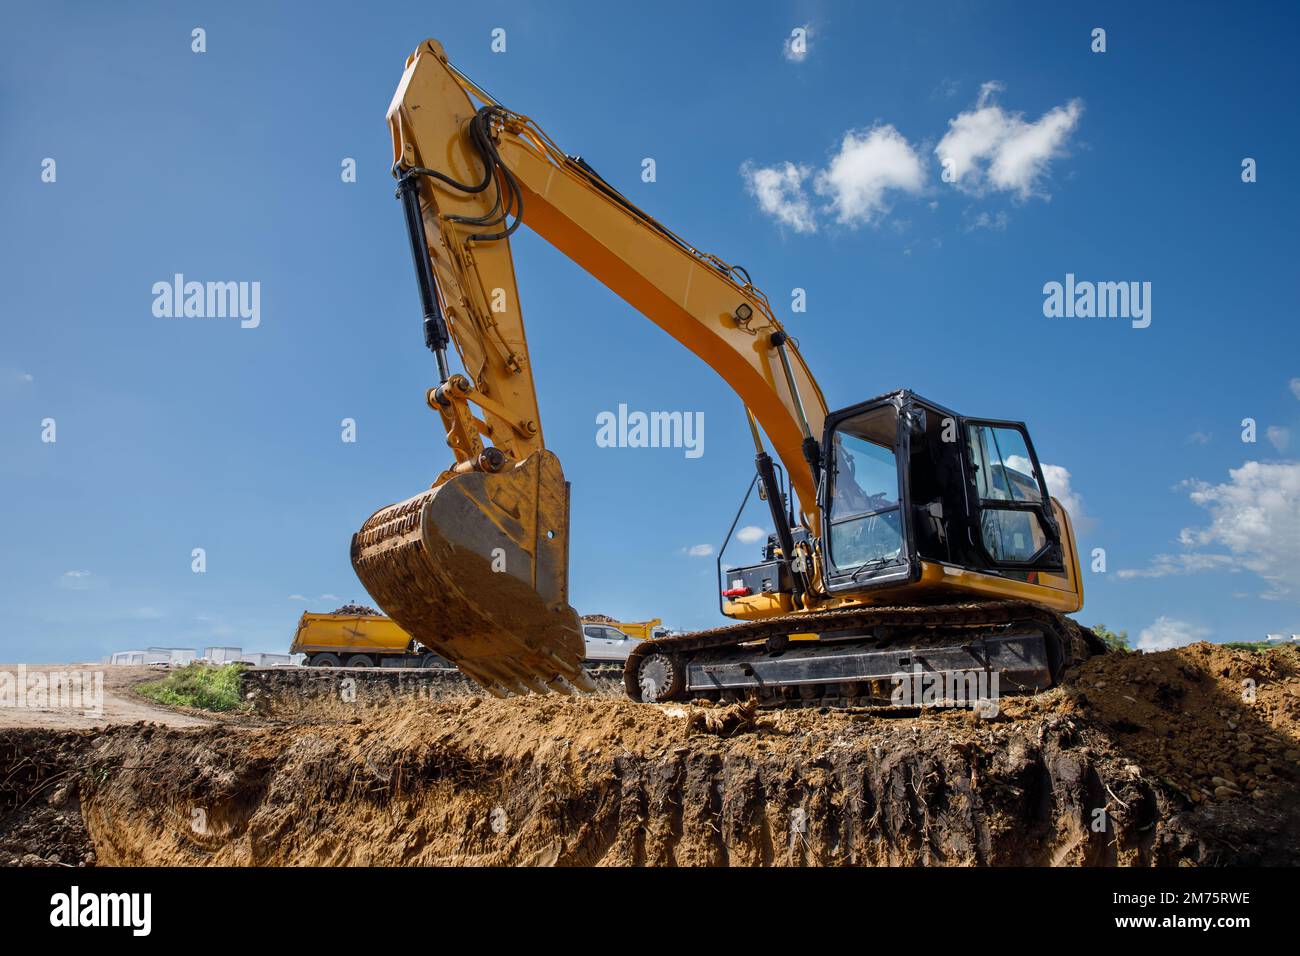 Un grande escavatore da costruzione di colore giallo sul cantiere in cava per l'estrazione. Immagine industriale. Foto Stock